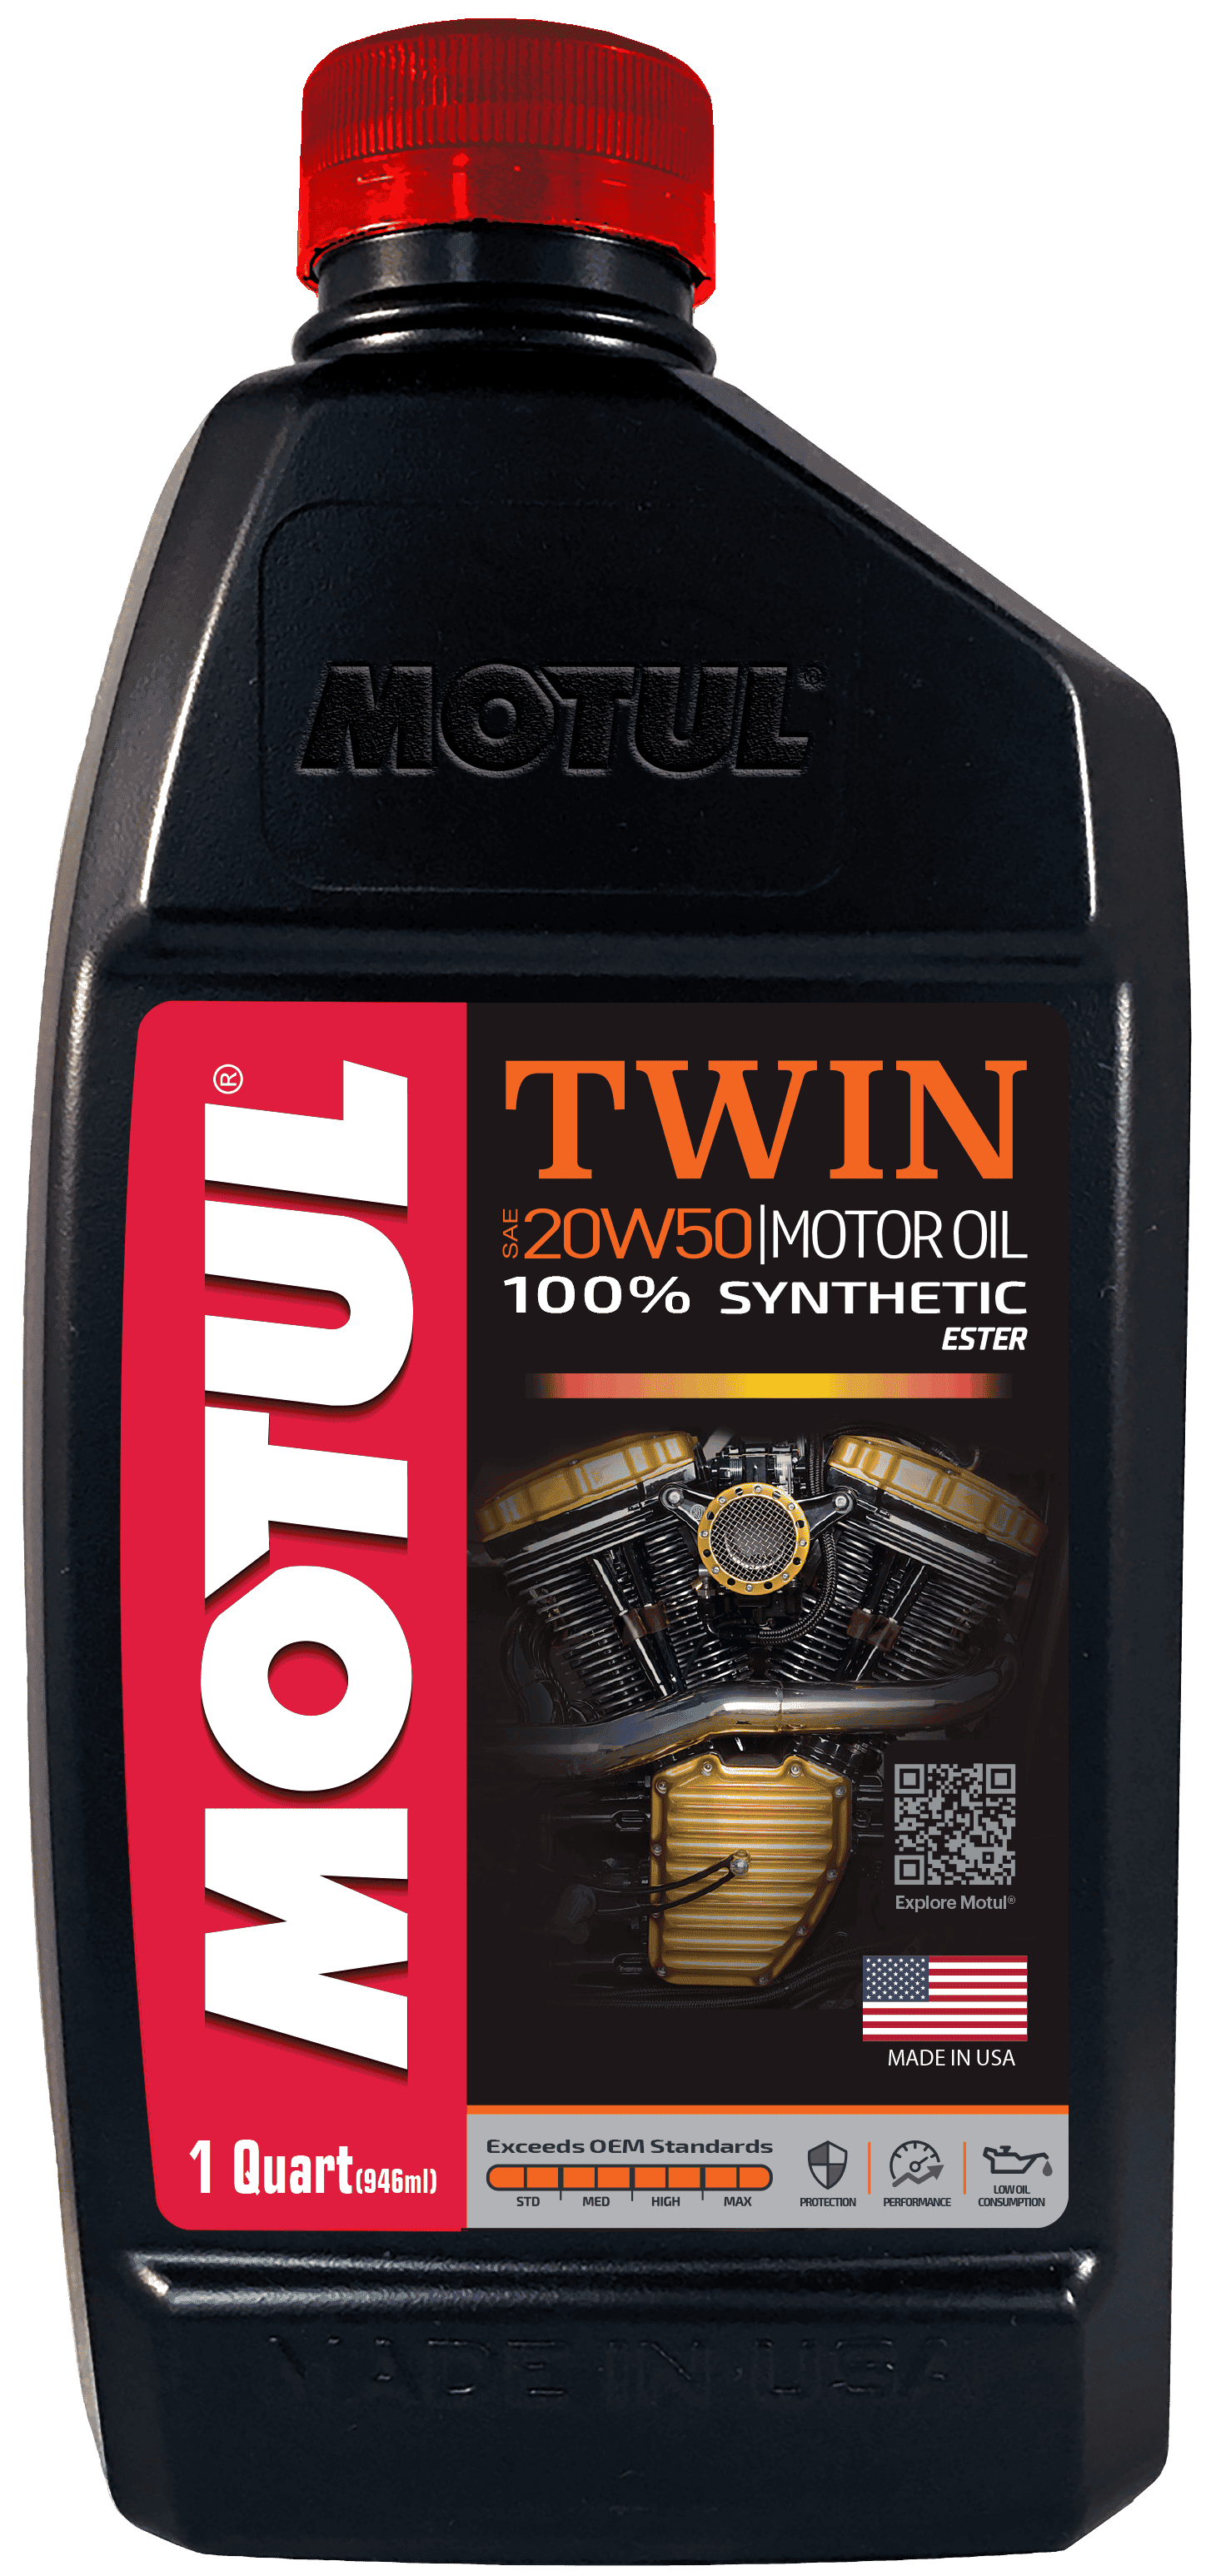 TWIN - Motor Oil 20w50 (2).png